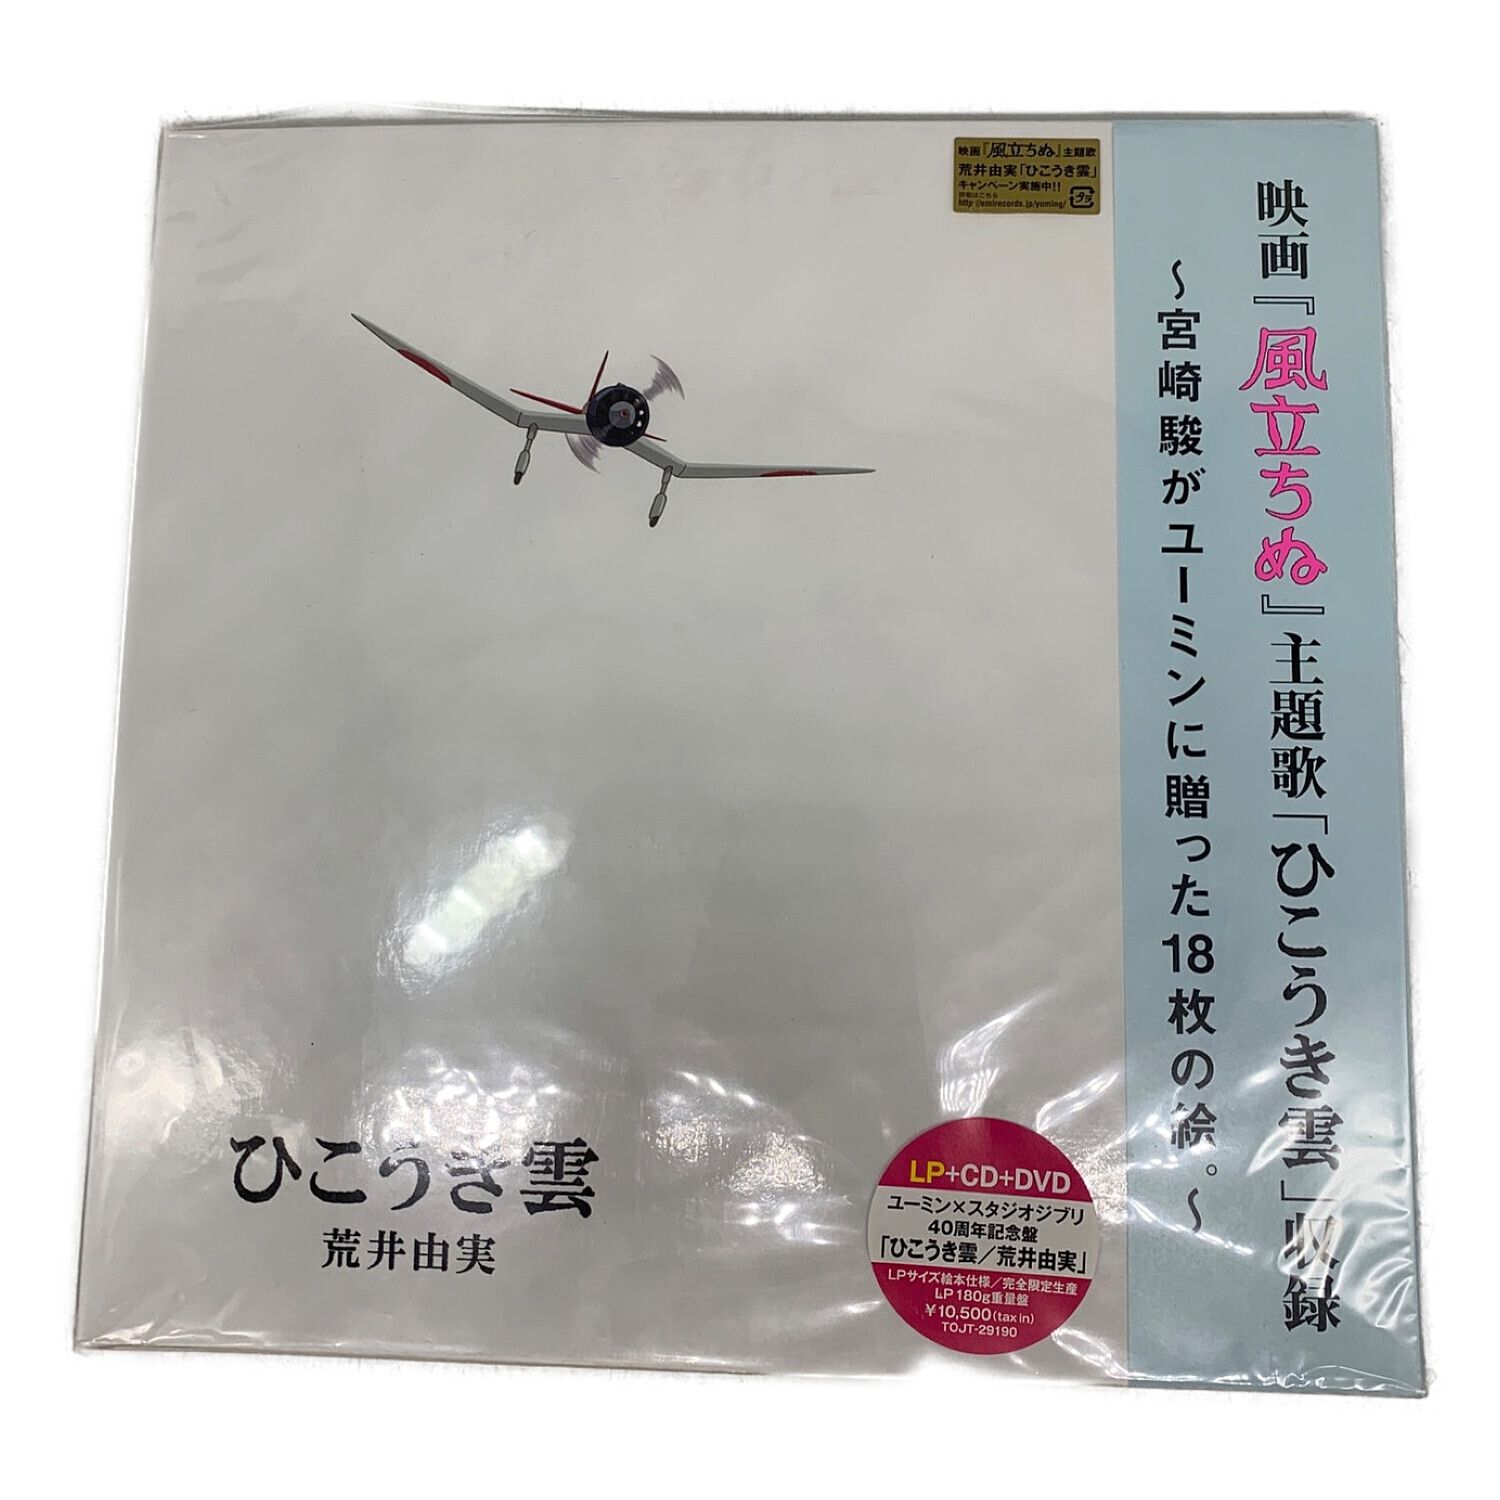 ユーミン×スタジオジブリ 40周年記念盤「ひこうき雲」 完全生産限定盤 